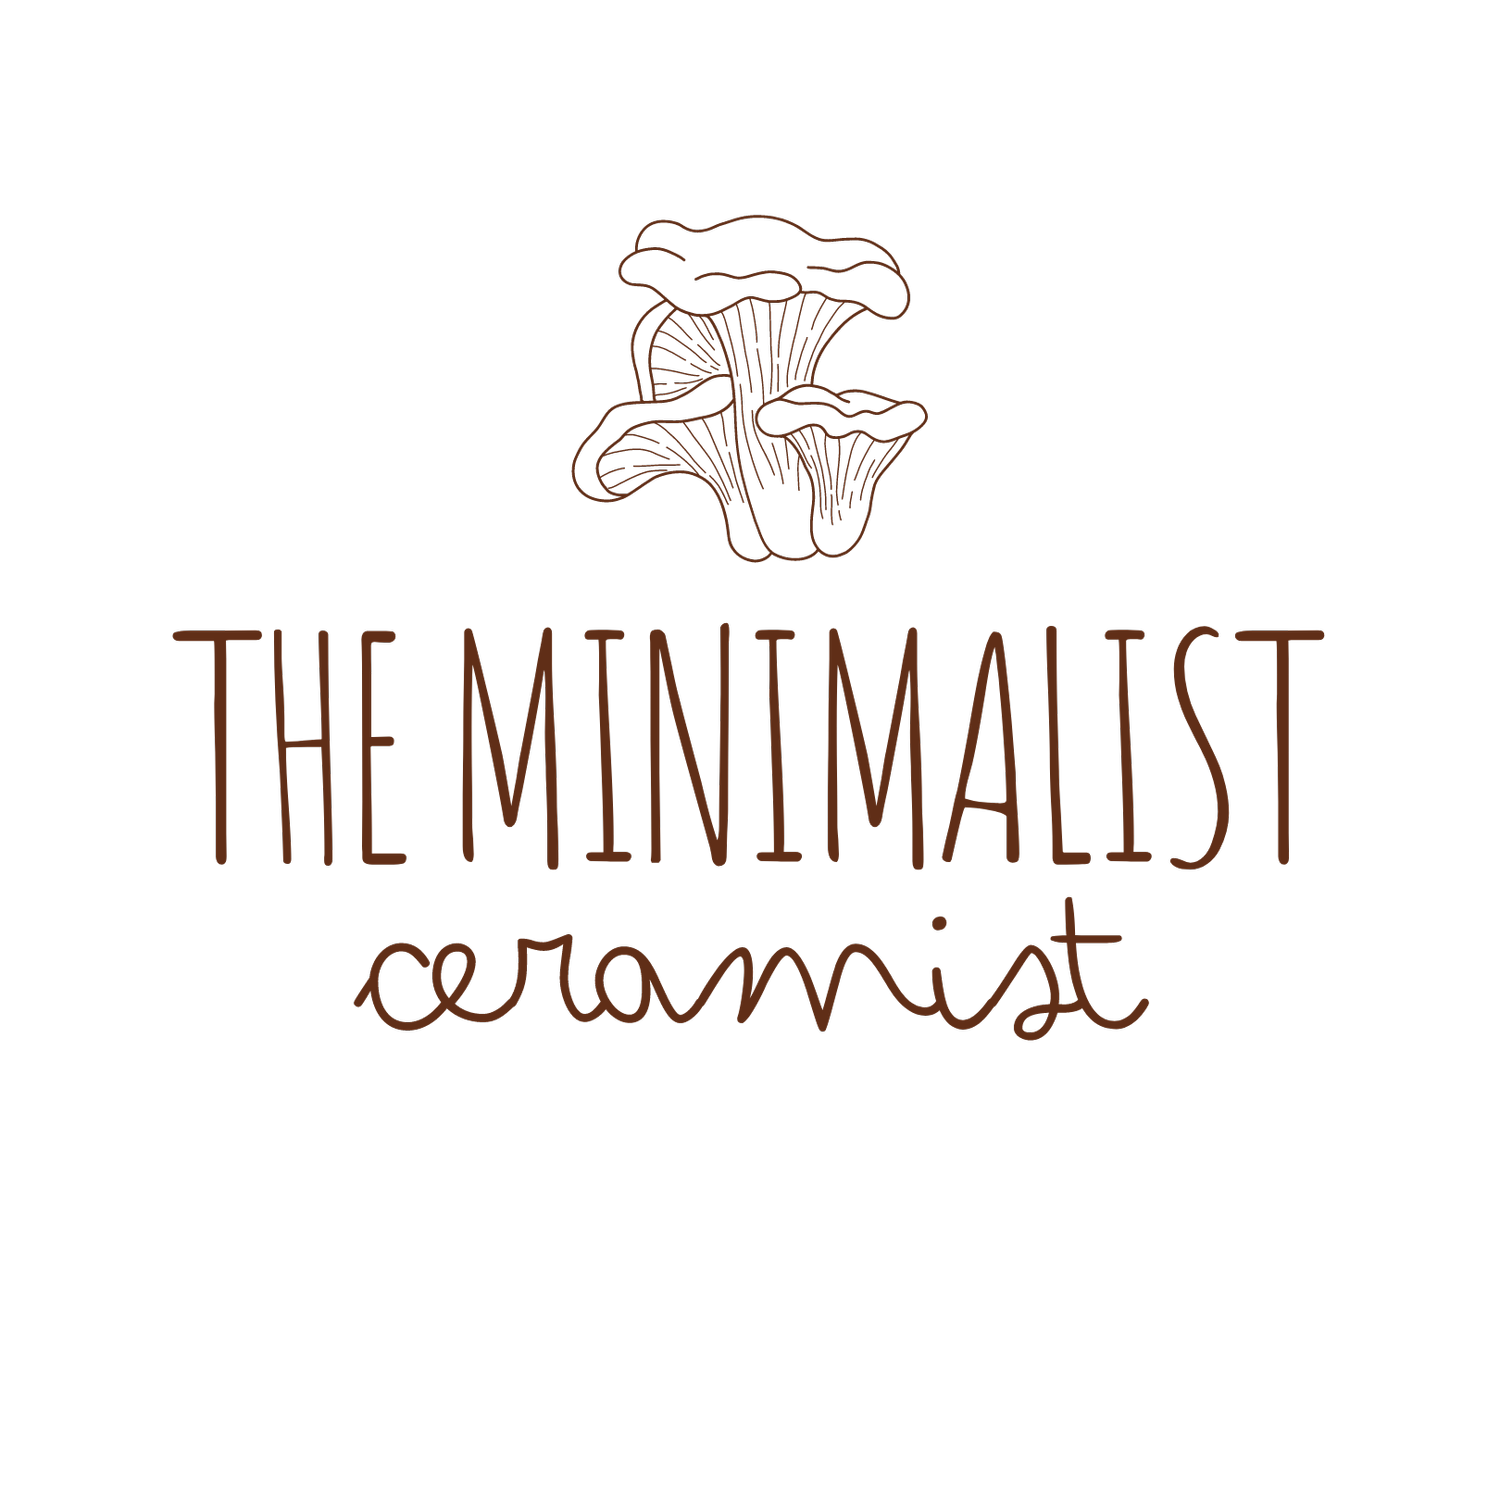 The Minimalist Ceramist